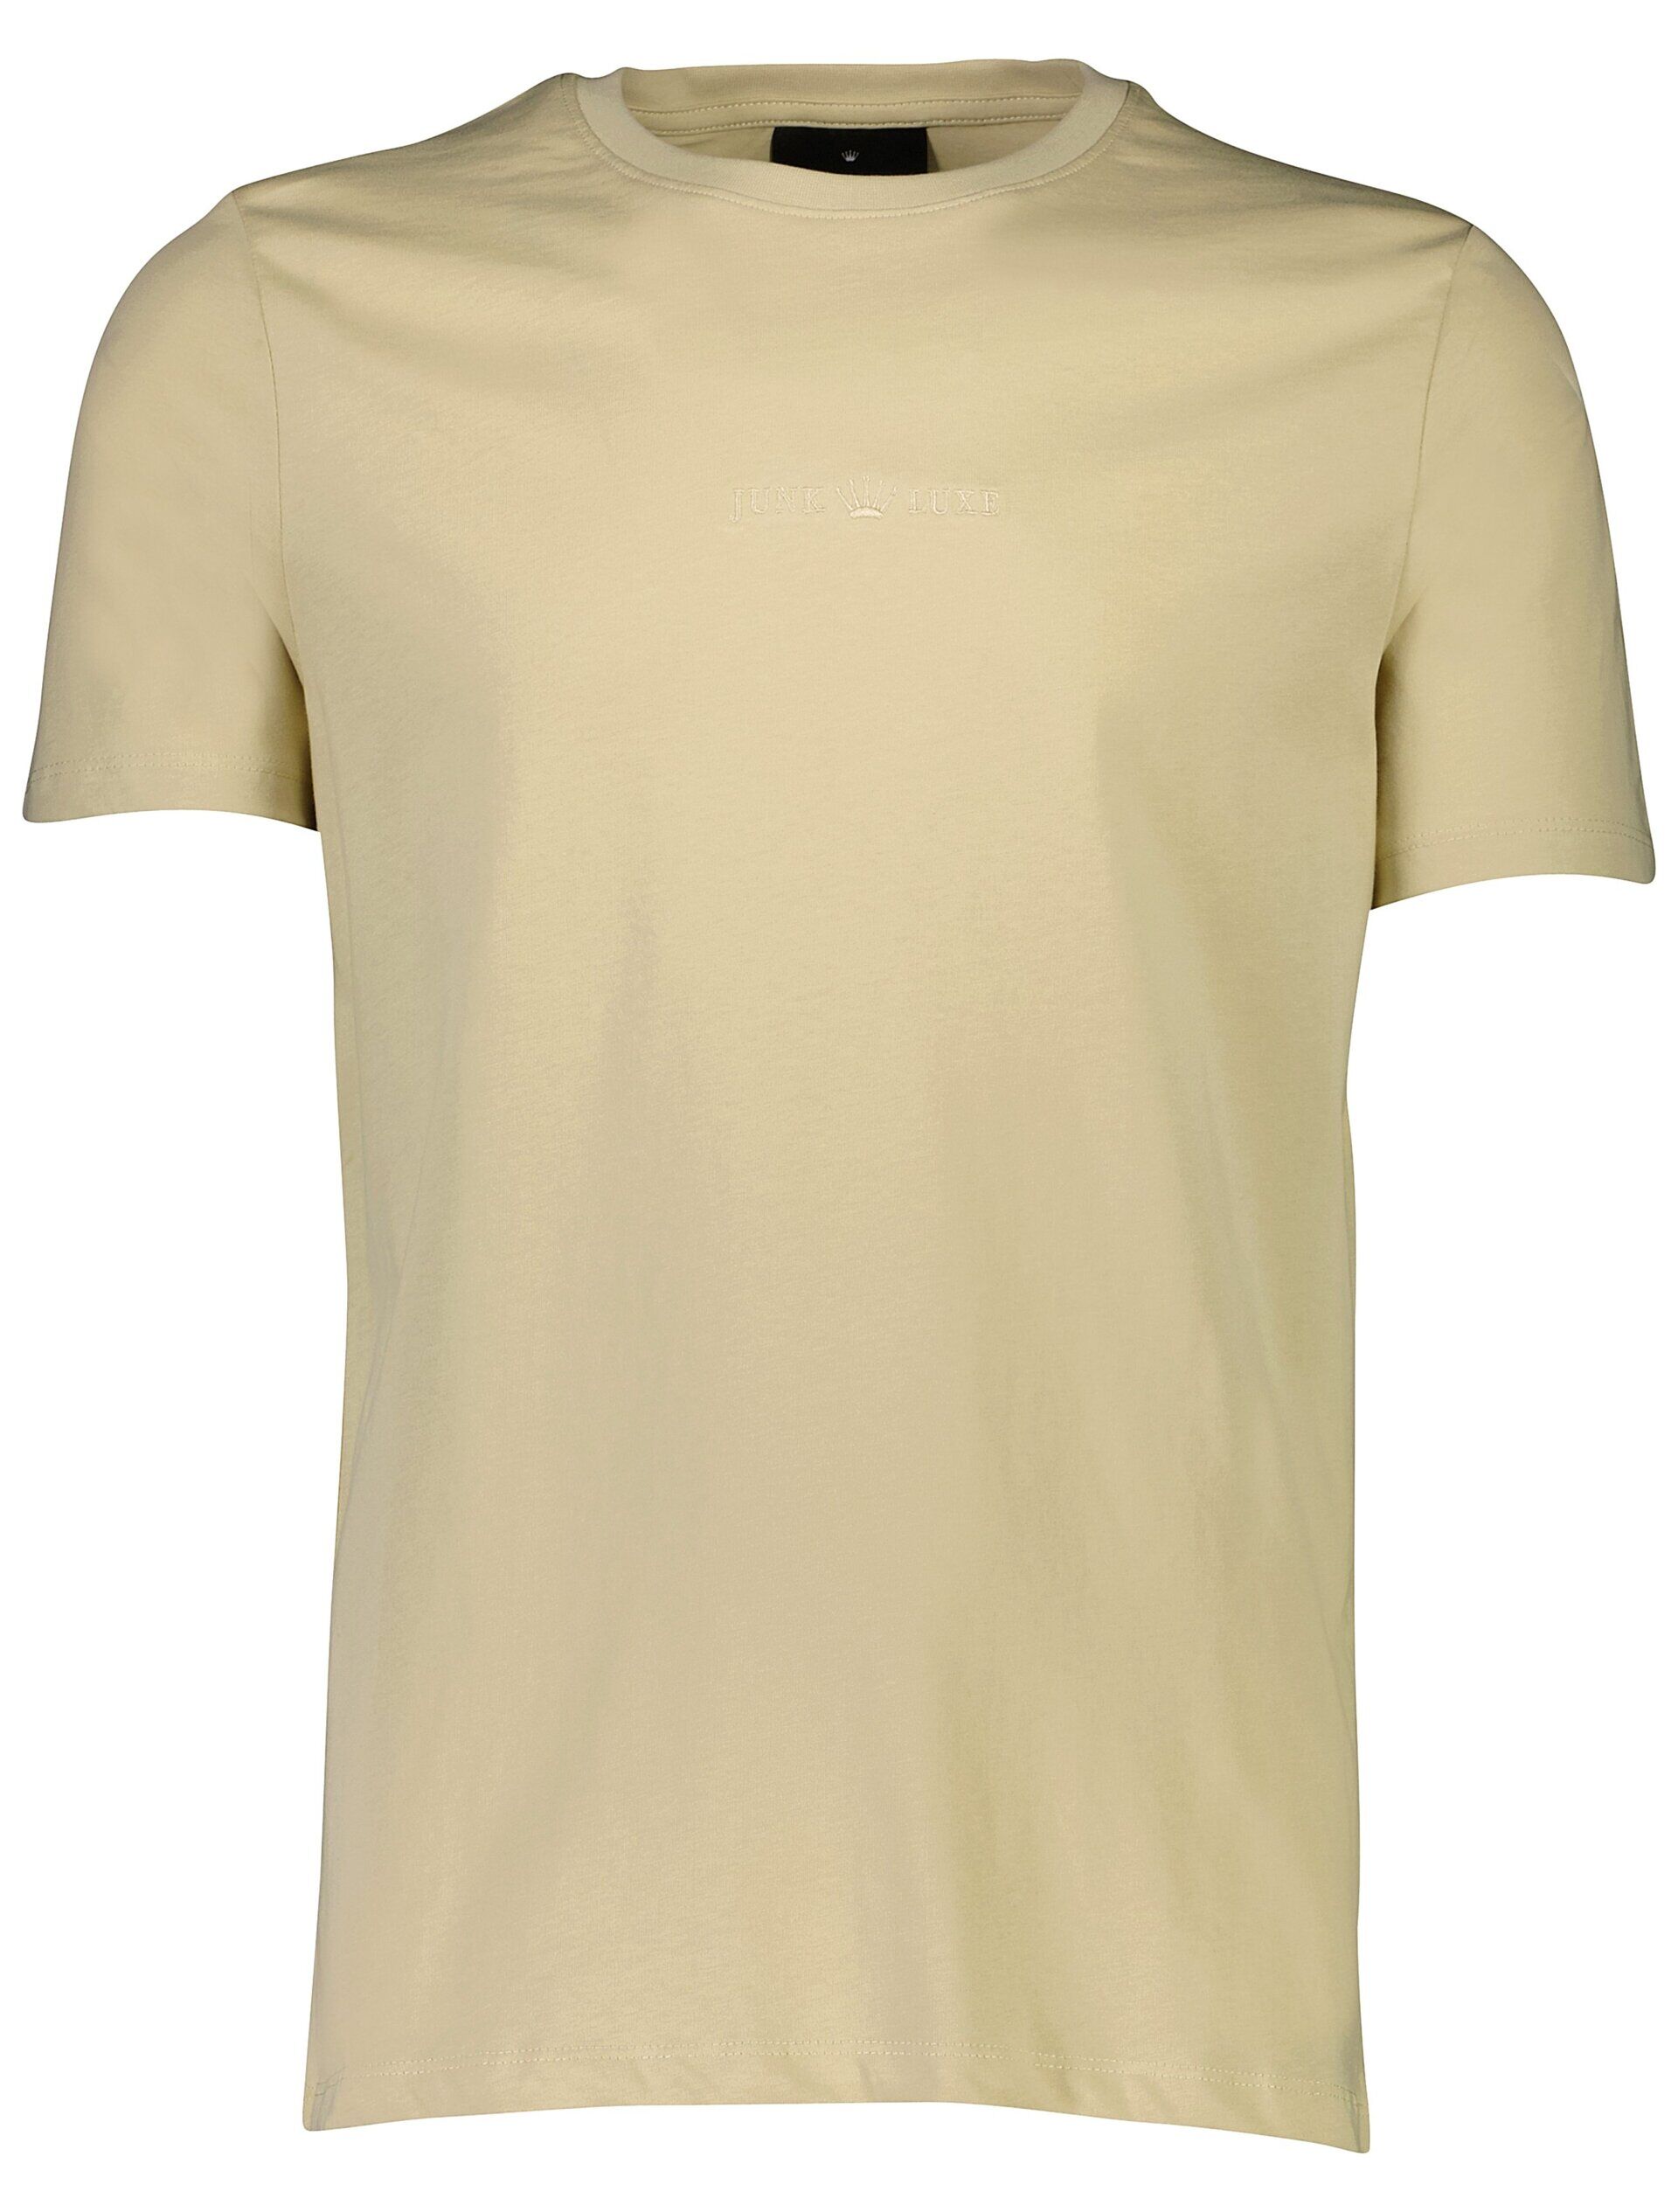 Junk de Luxe  T-shirt Sand 60-452043